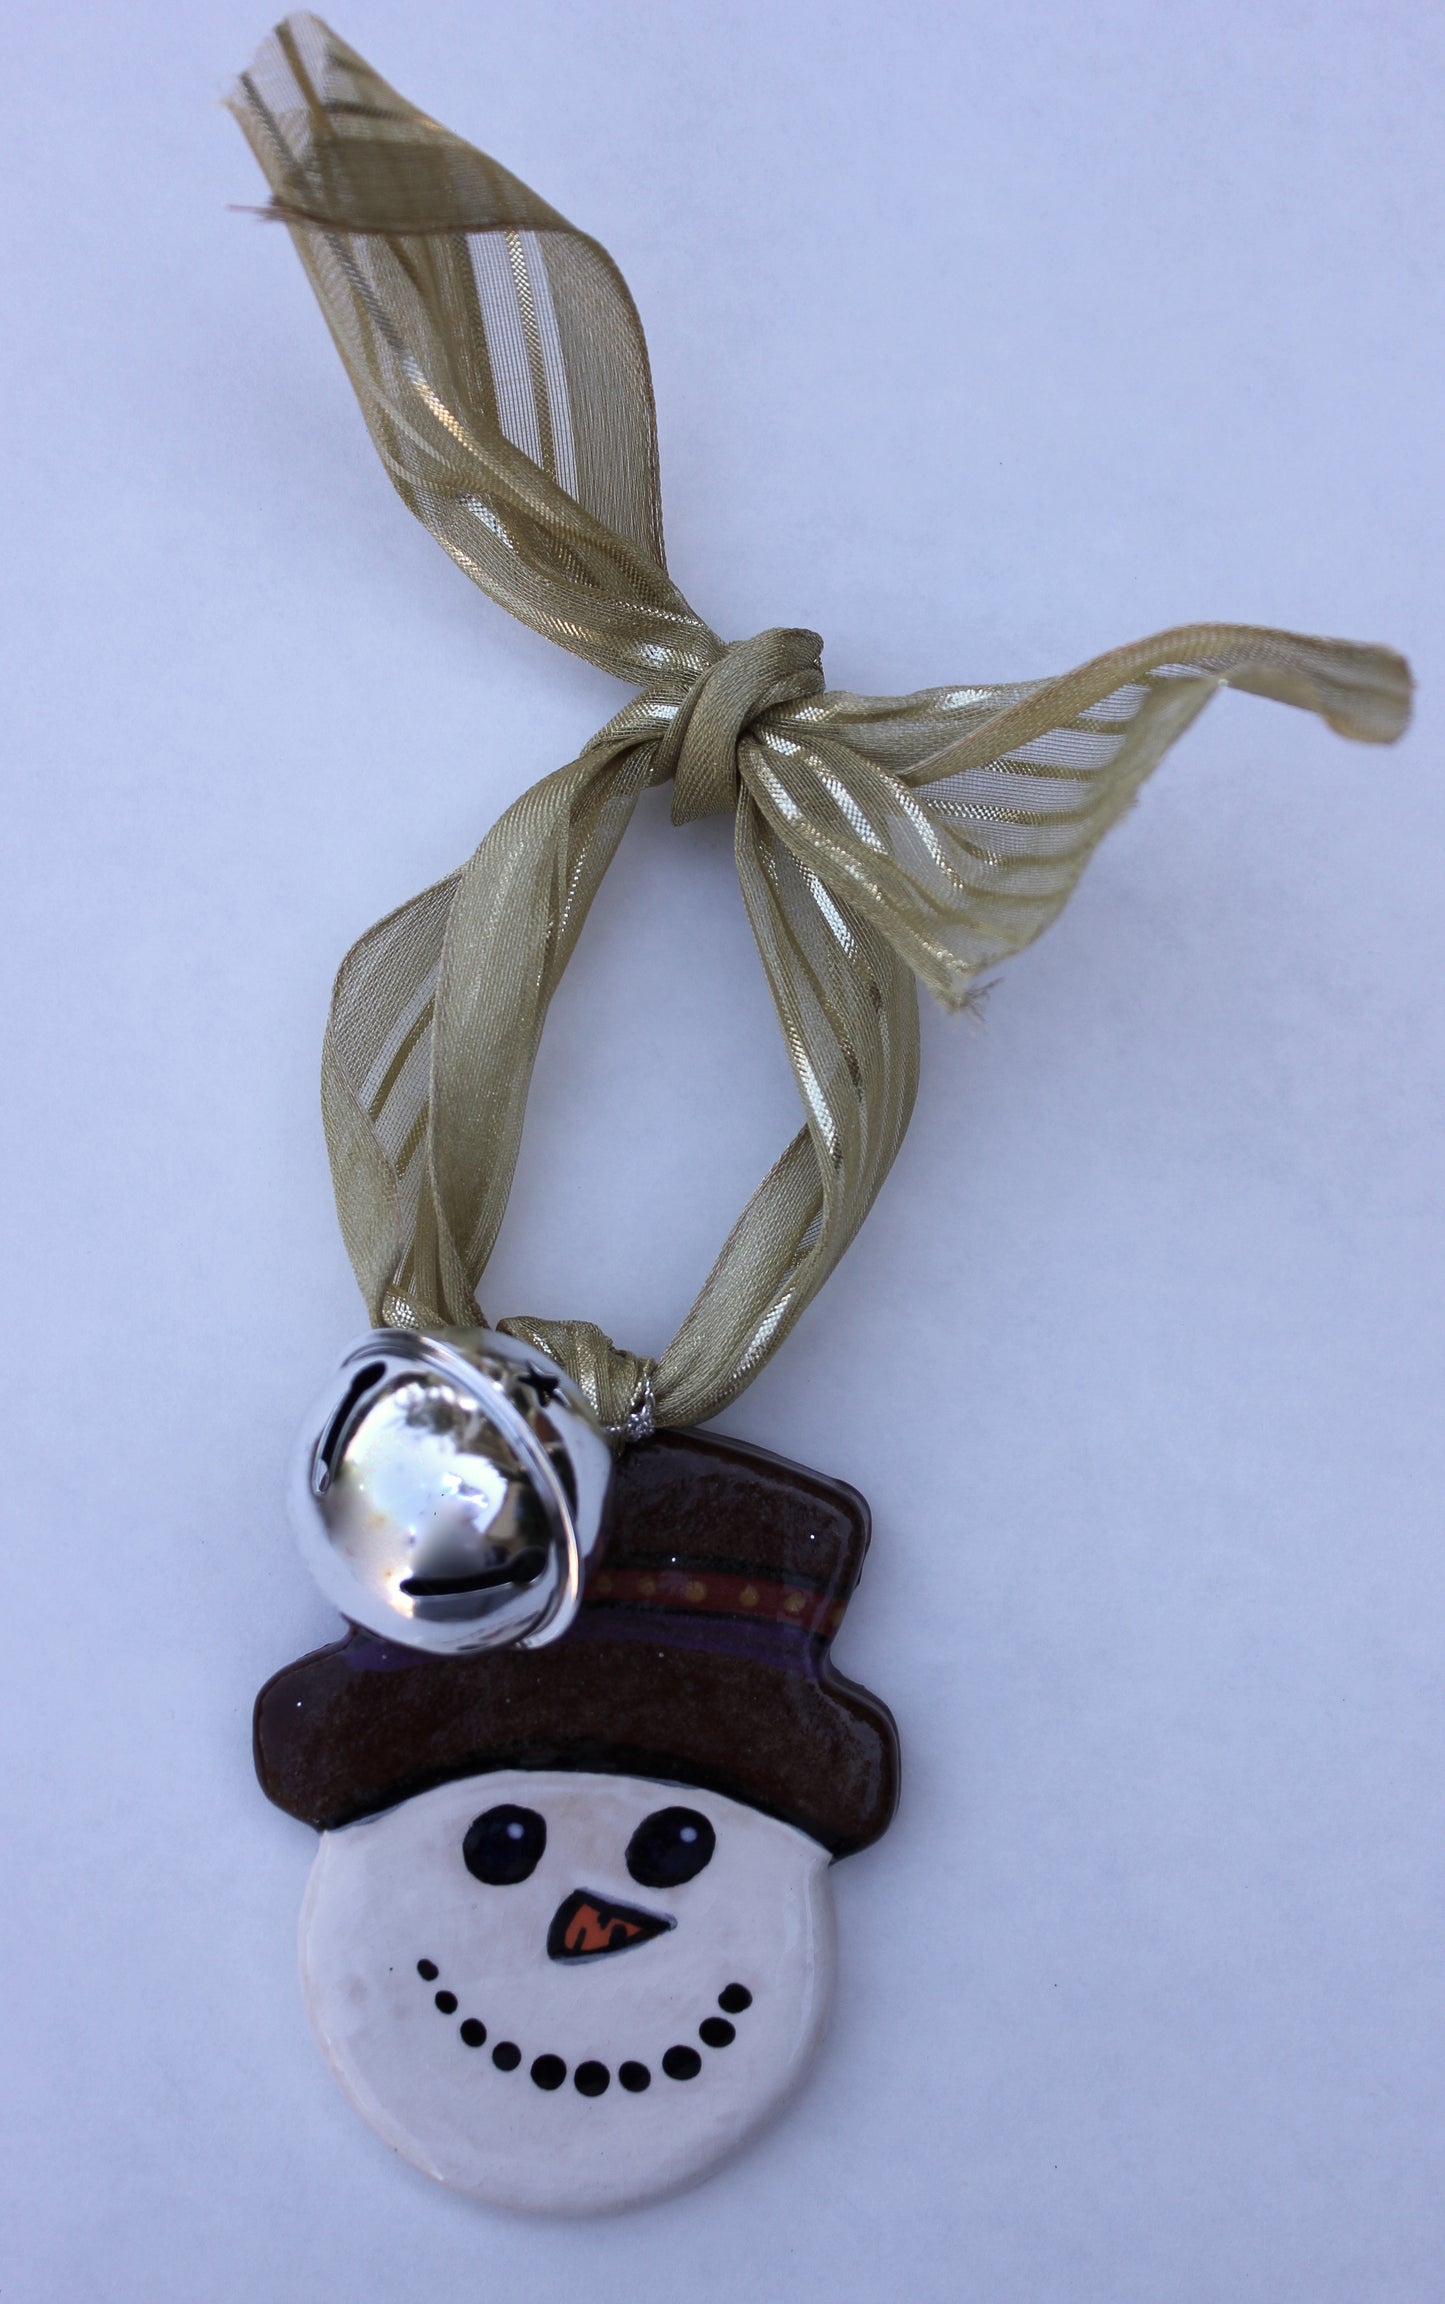 Snowman Head Tree Ornament